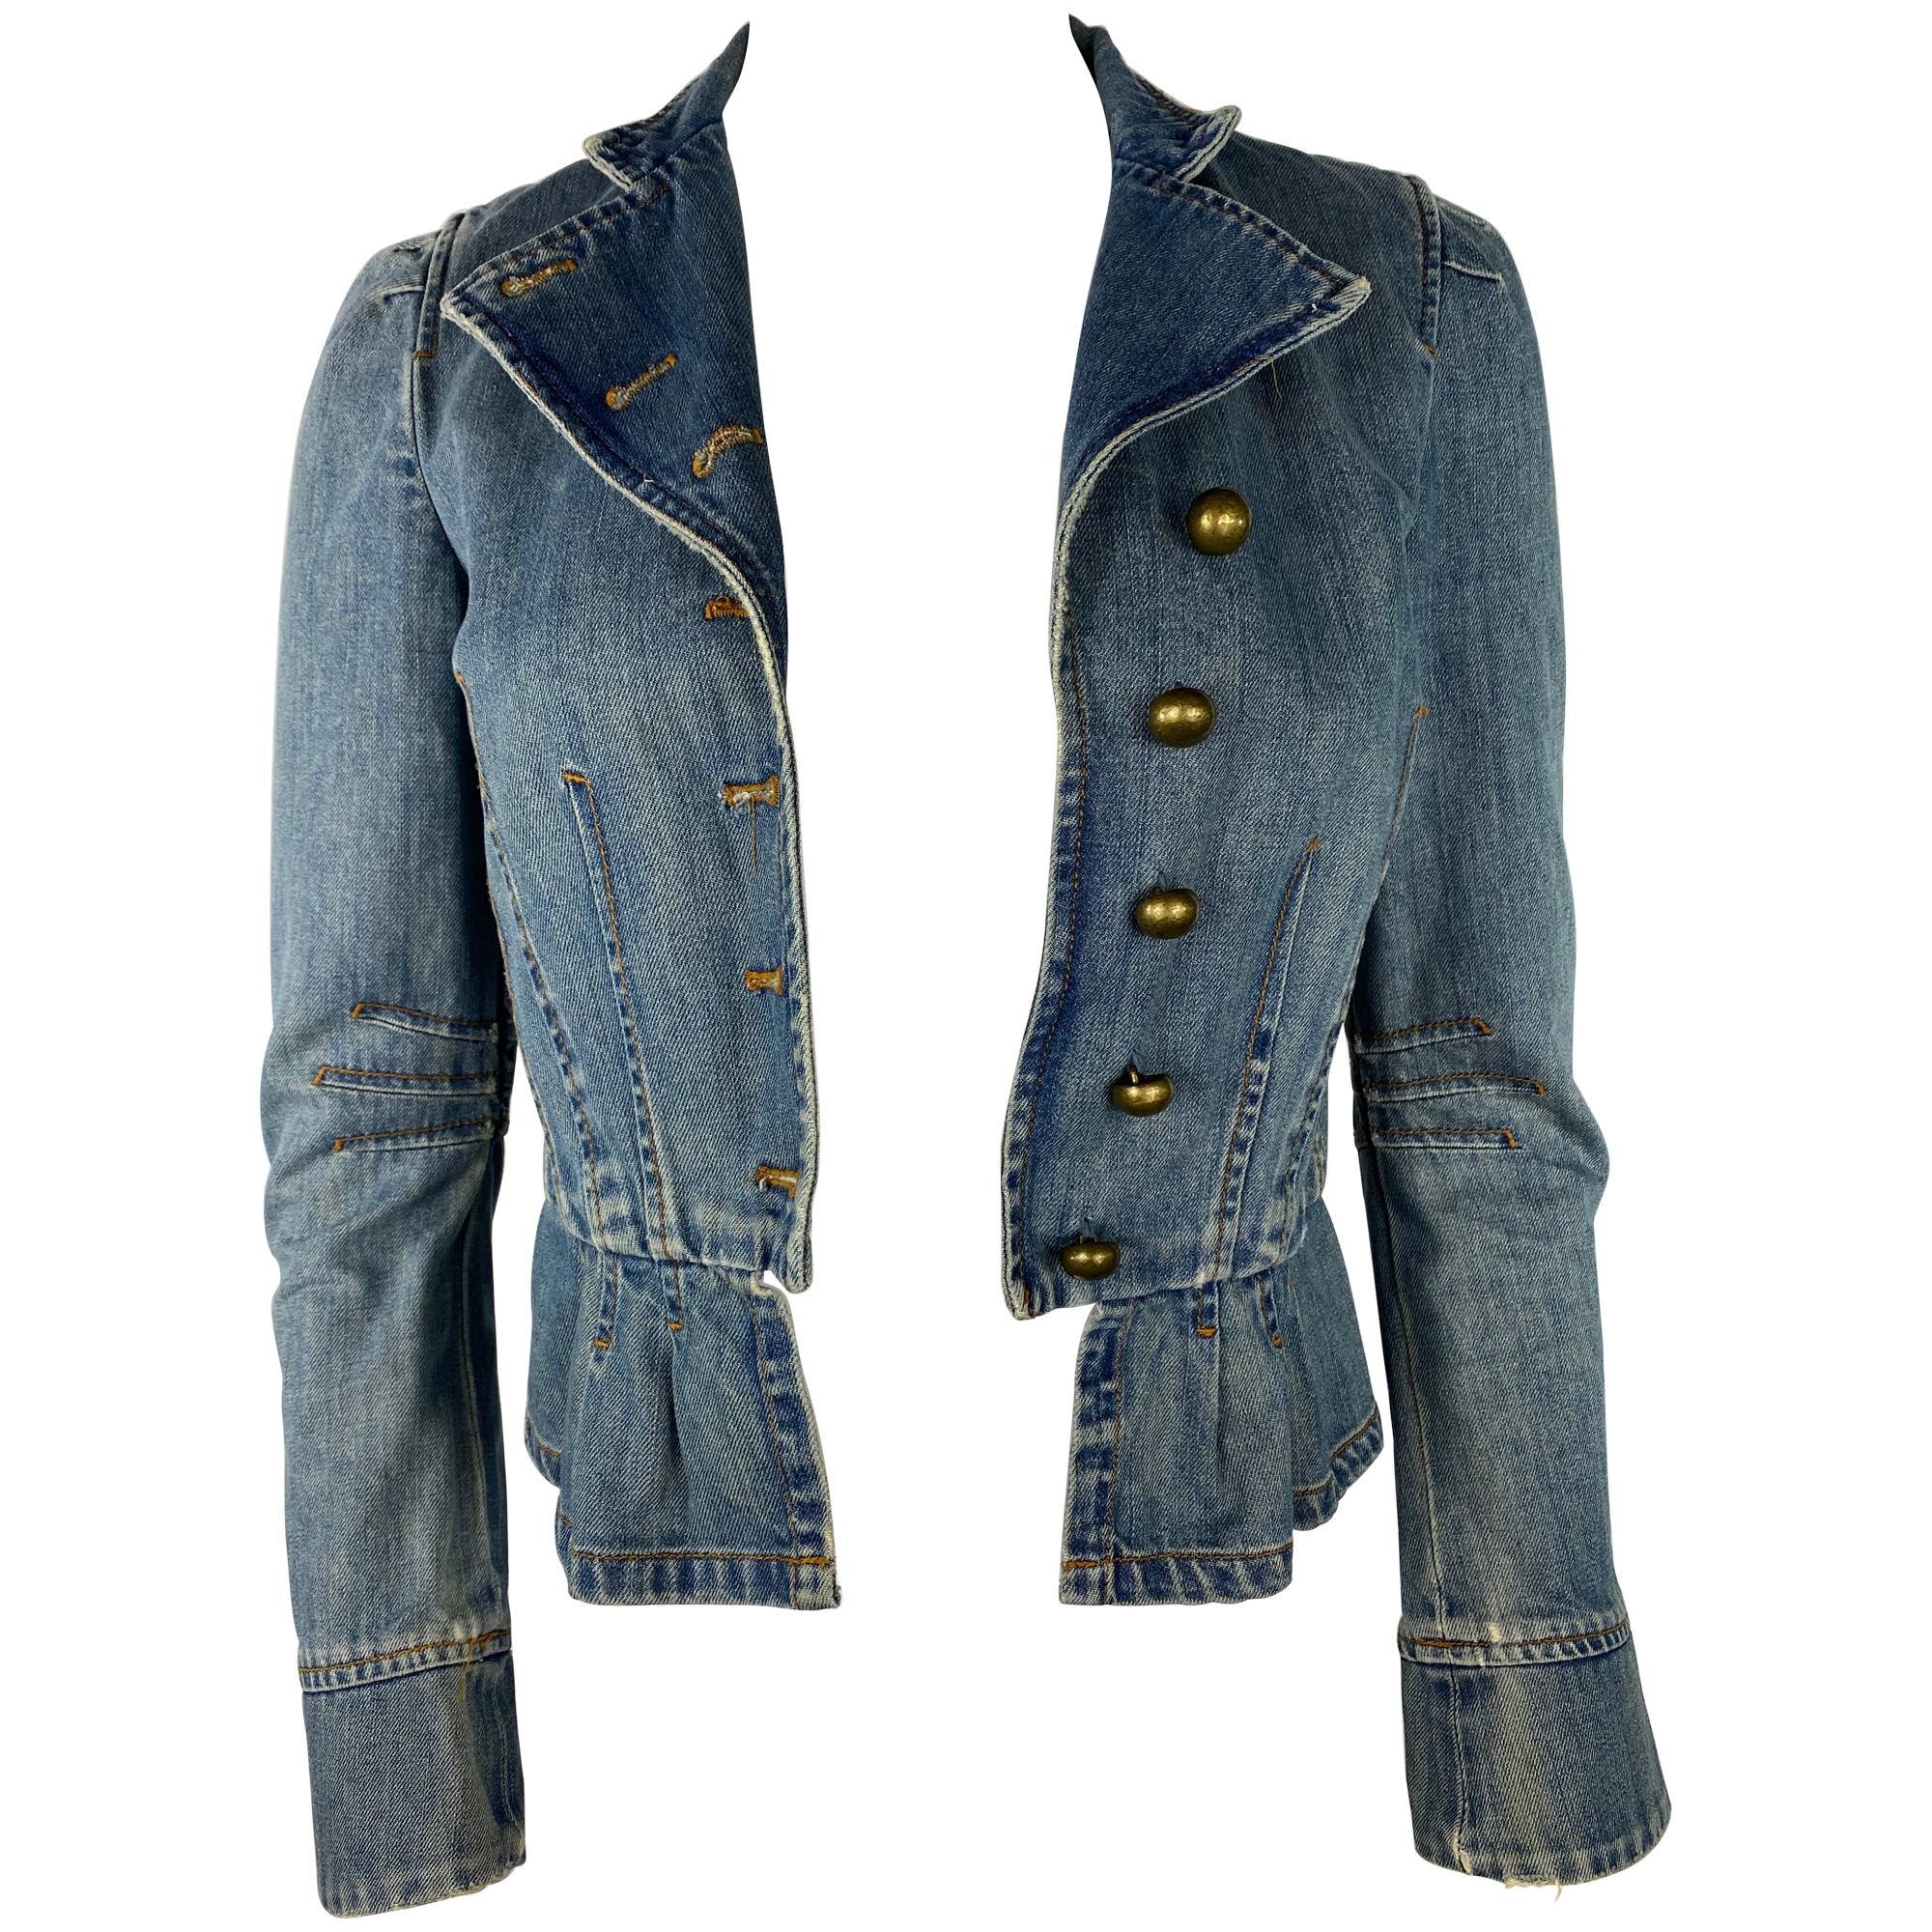 Marc Jacobs Denim Jacket, Size 4